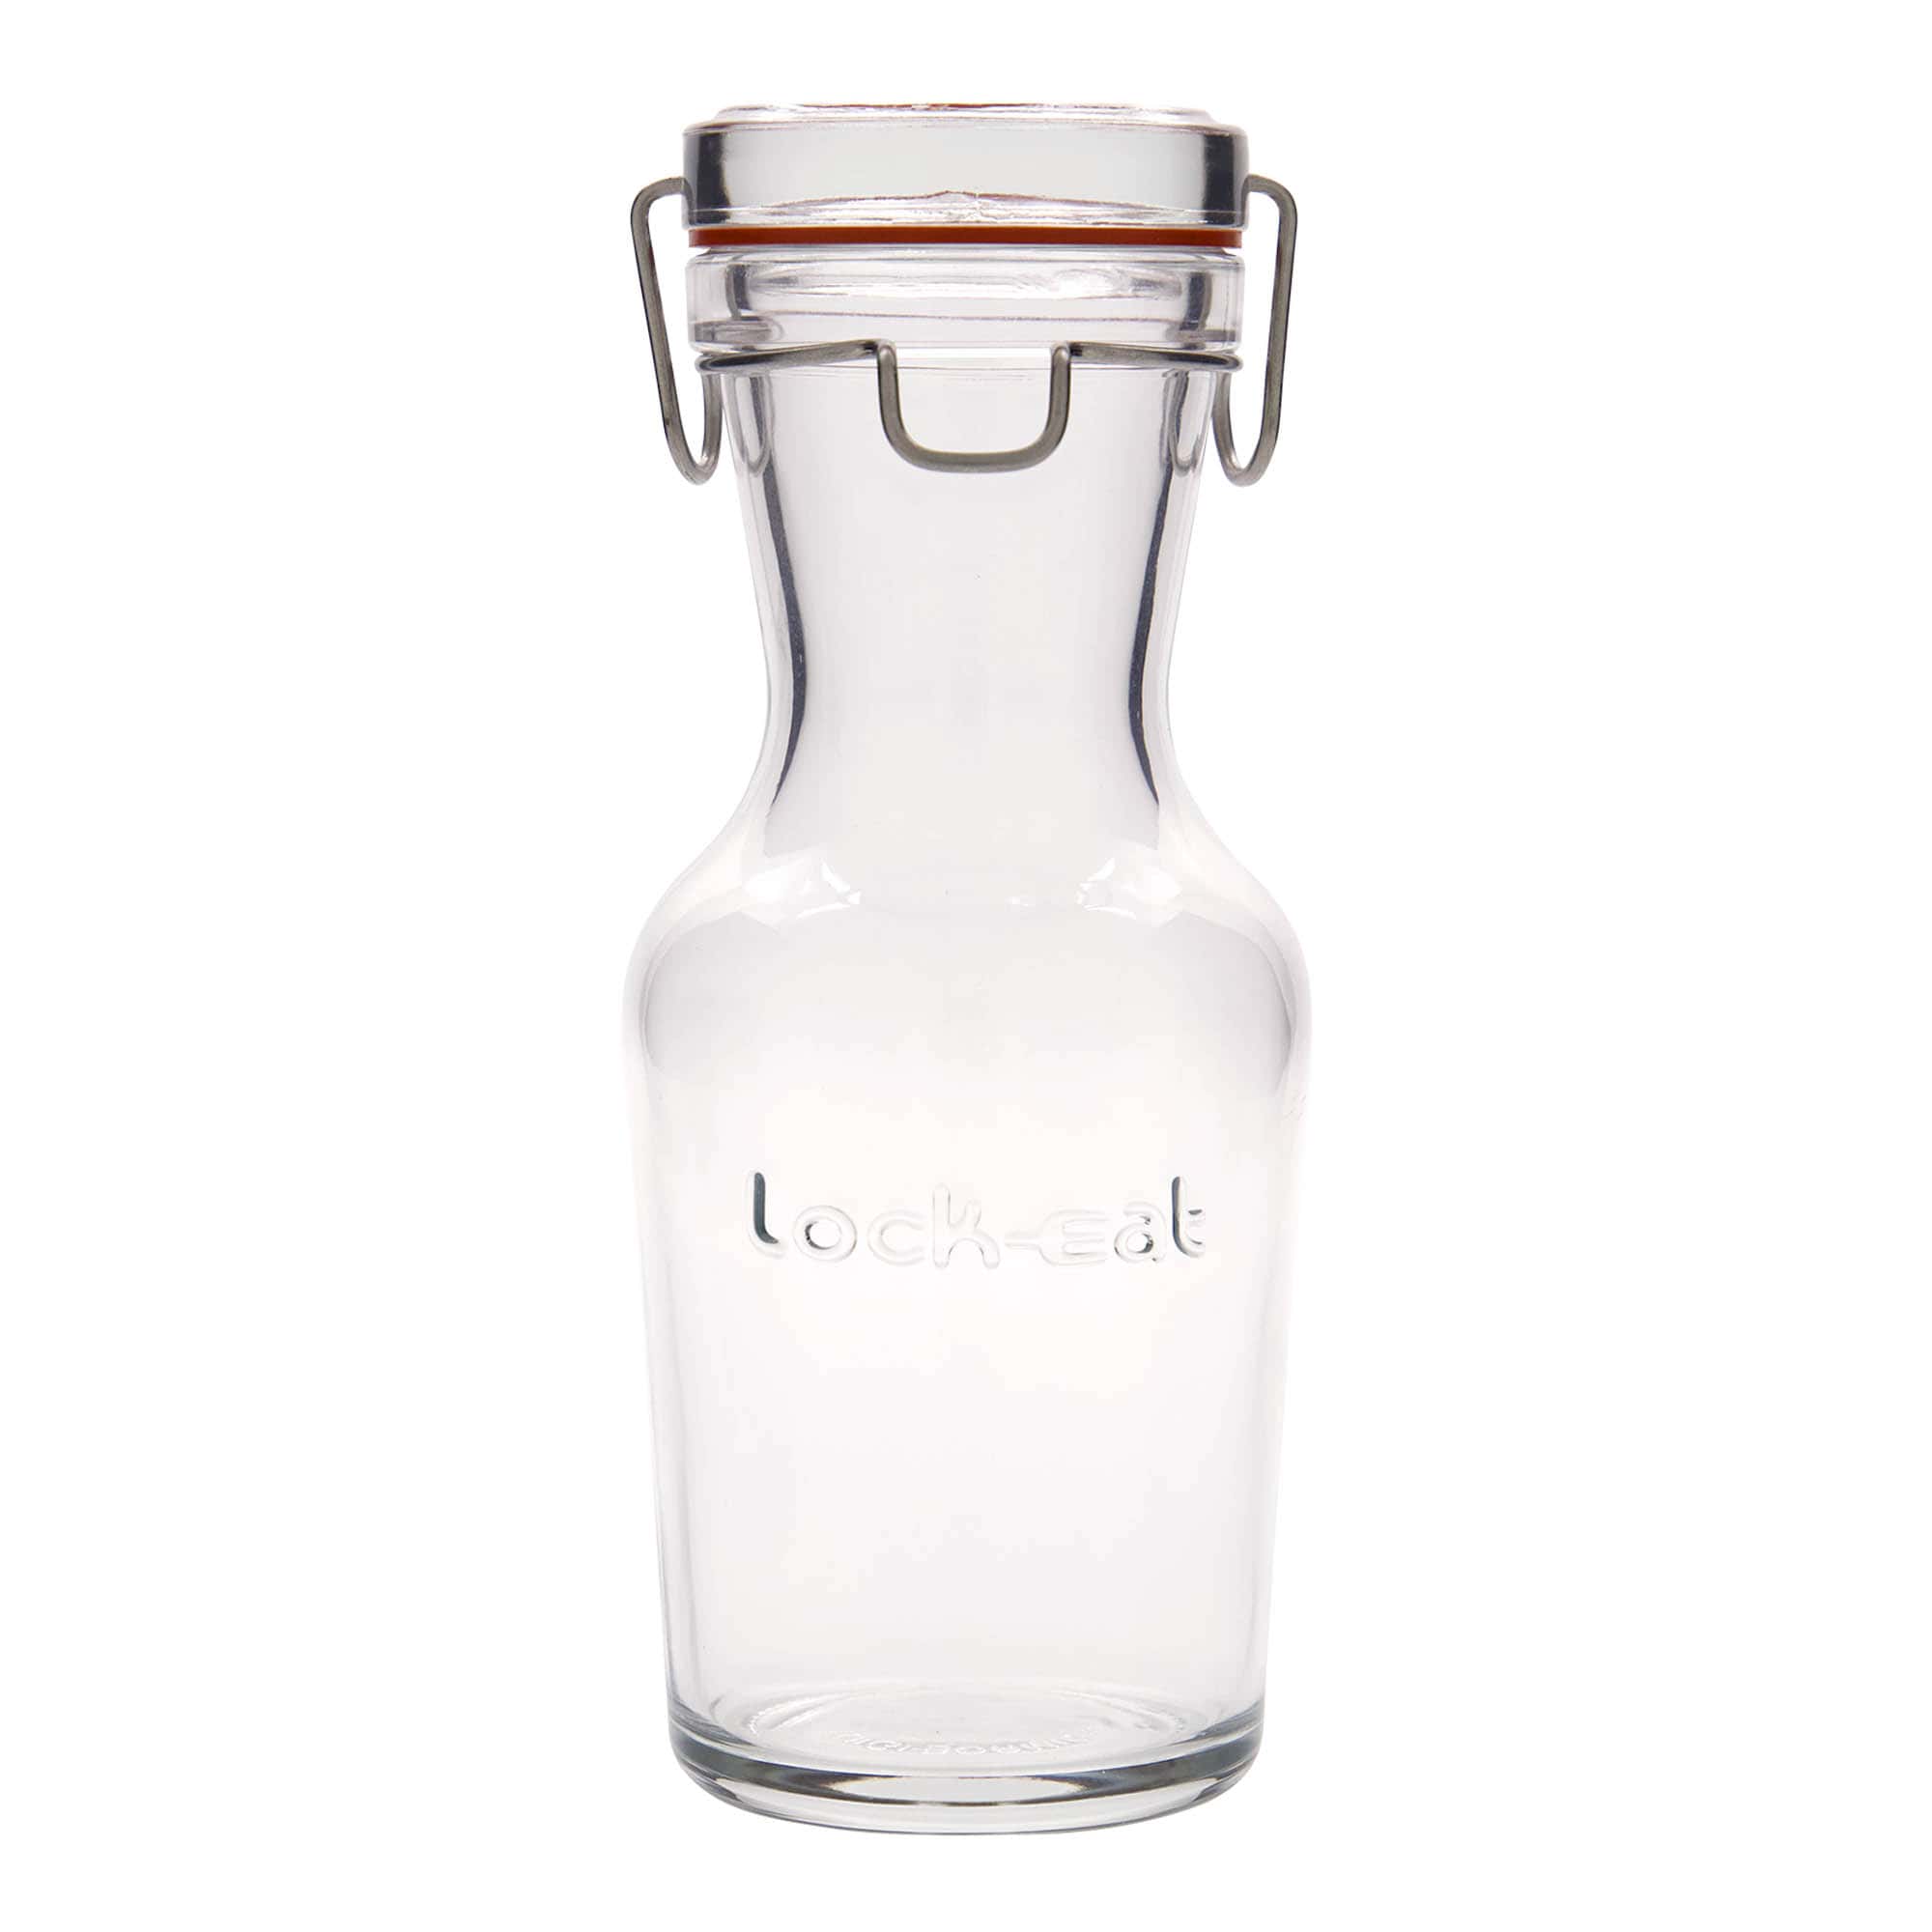 500 ml-es üvegkancsó 'Lock-Eat', szájnyílás: fémcsatos zár